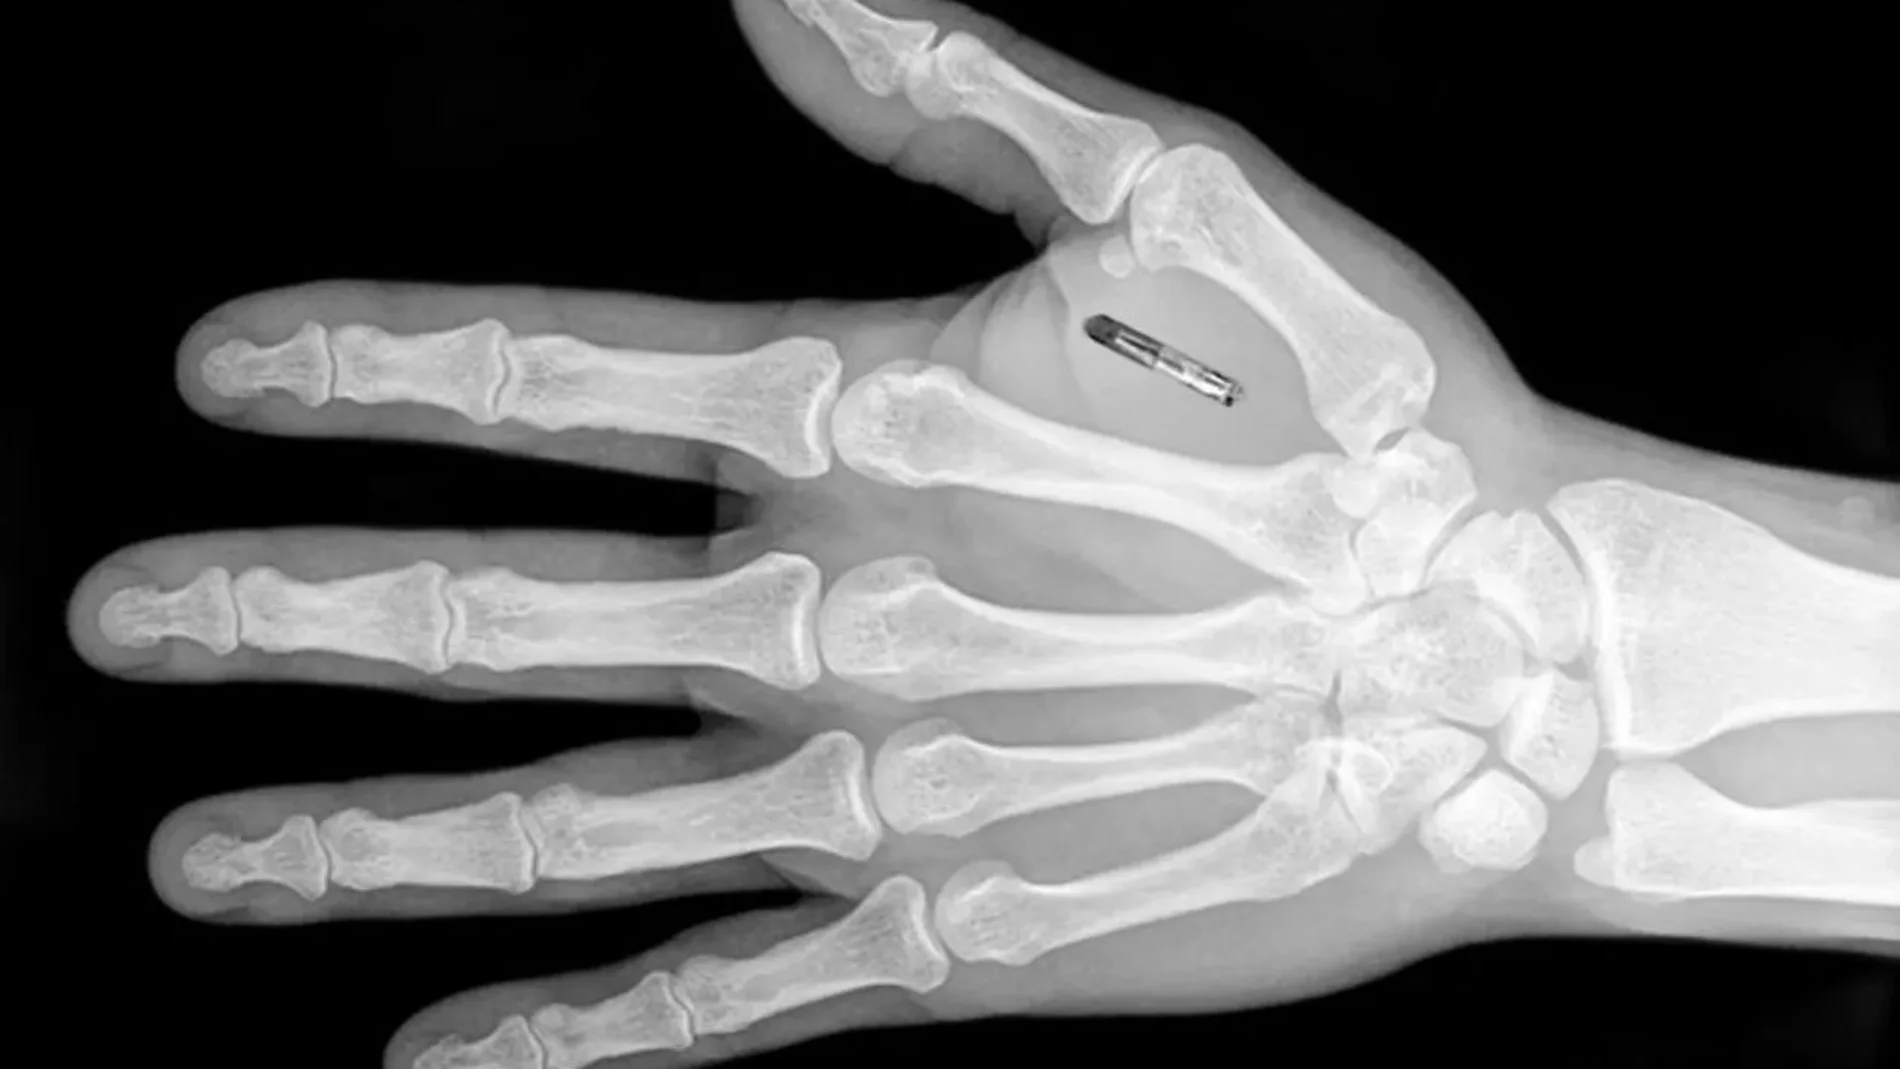 radiografia mano en la que se aprecia implantado un microchips para empresas